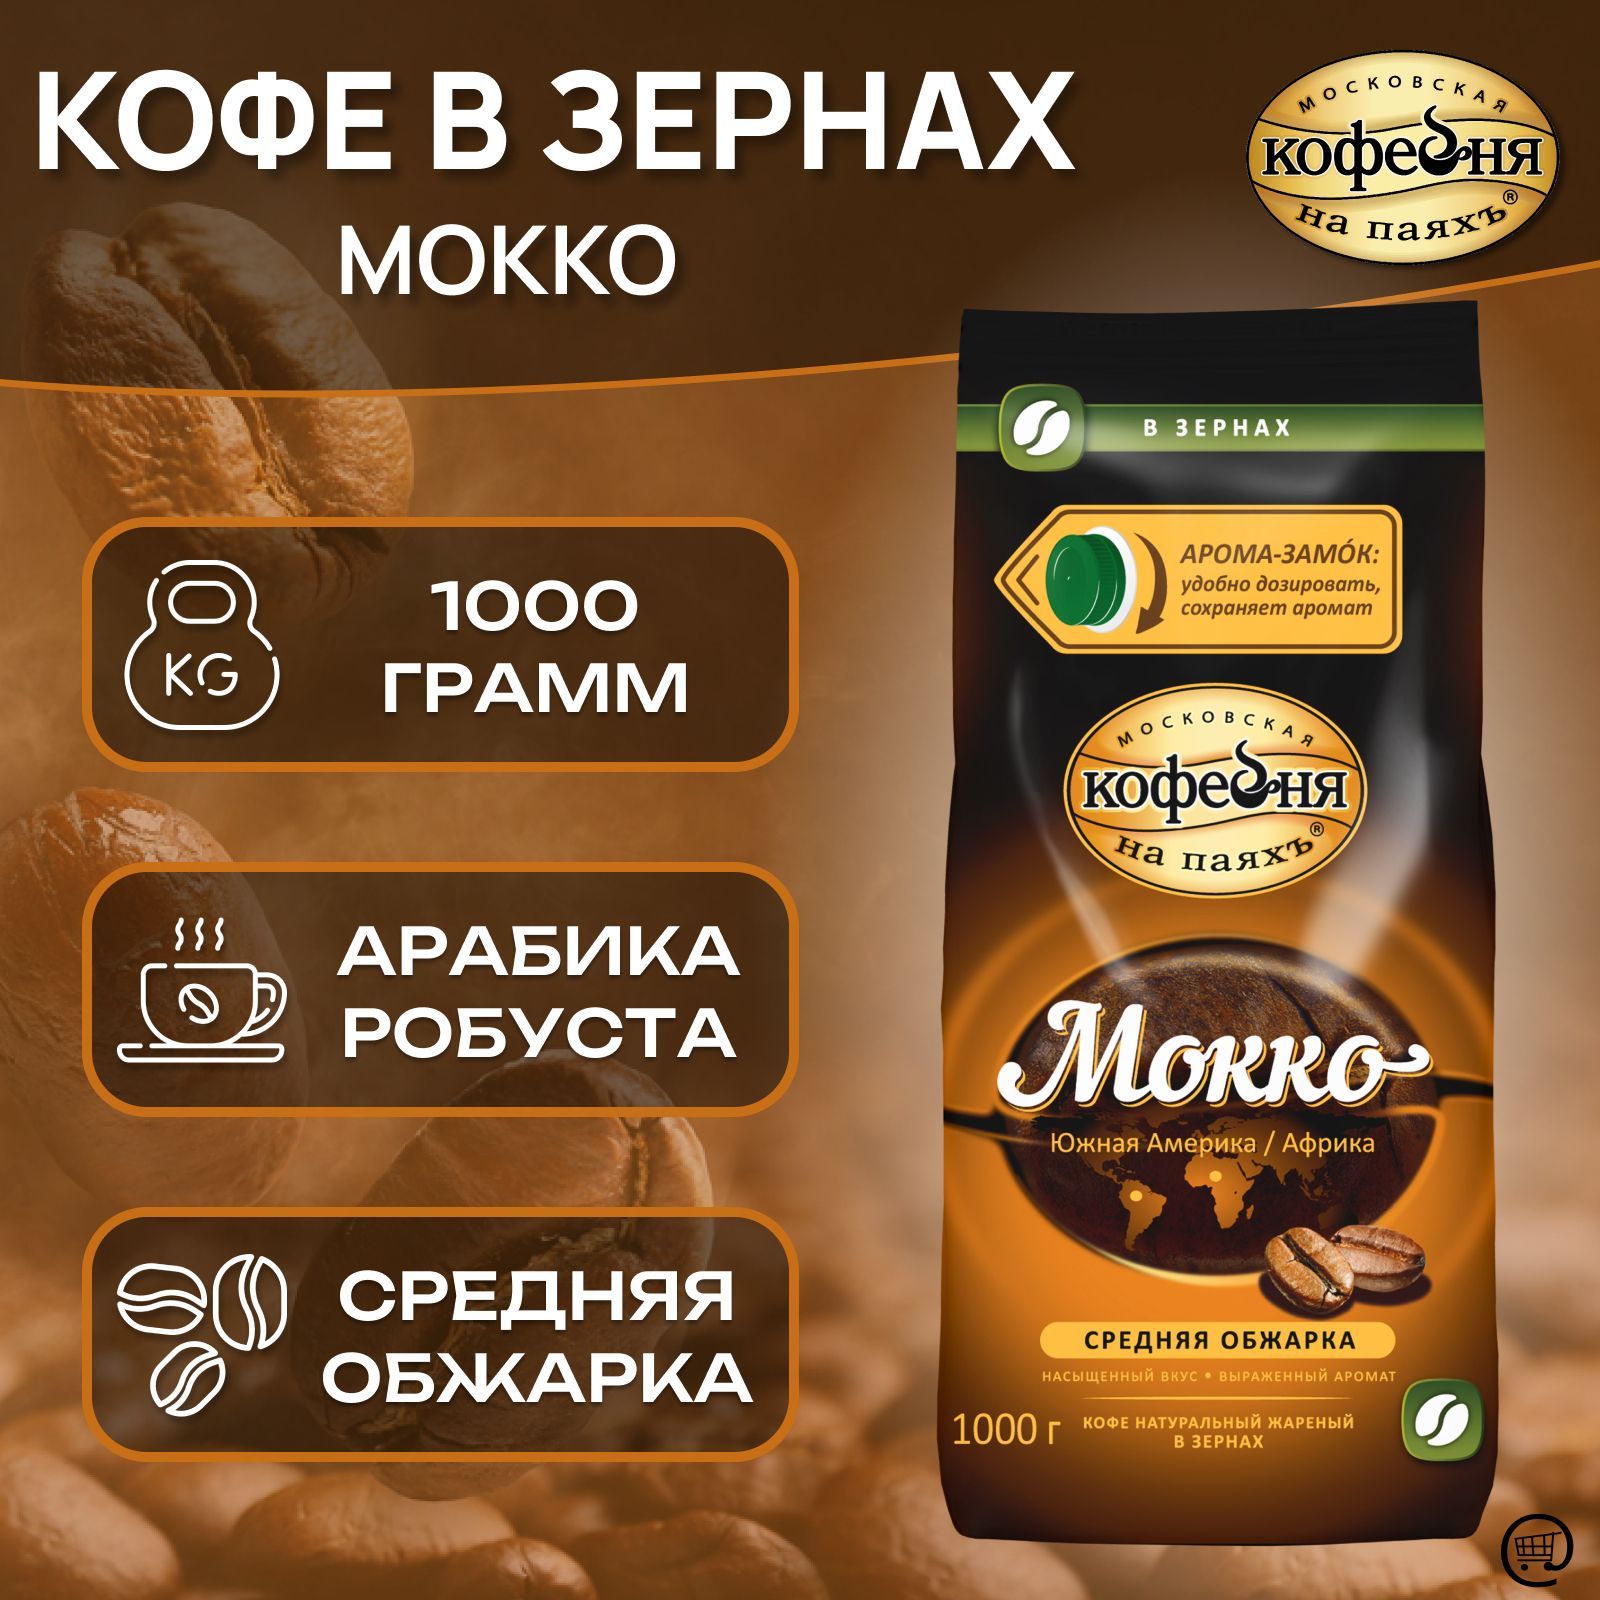 Кофе в зернах мокко. Кофе в зернах Московская кофейня на паяхъ мокко. Кофе мокко в зернах. Московская кофейня на паяхъ мокко.